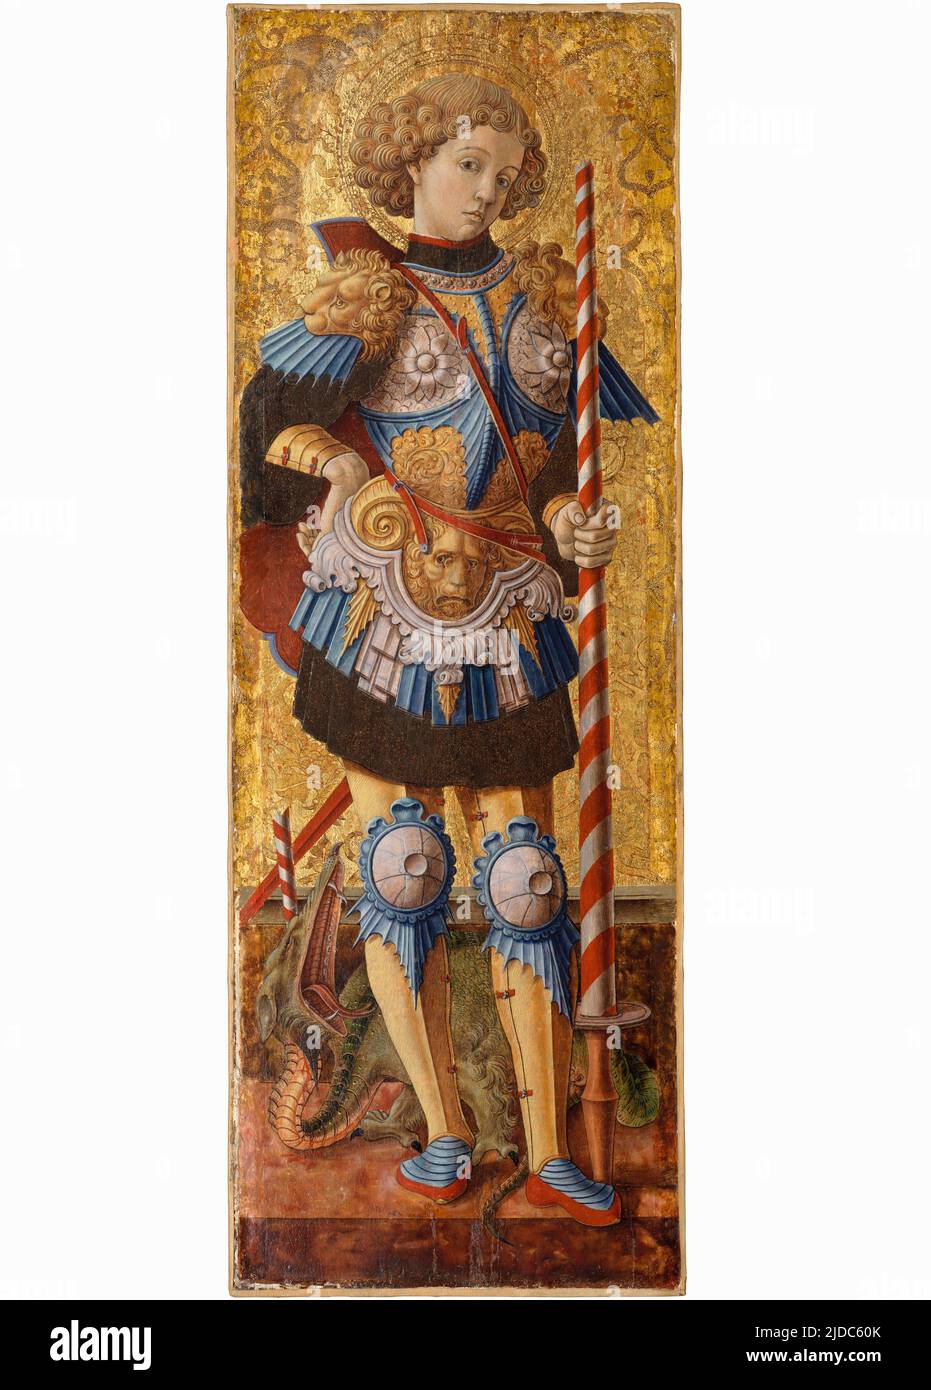 St. George IV Jahrhundert - von Carlo Crivelli im Jahr 1472 Stockfoto